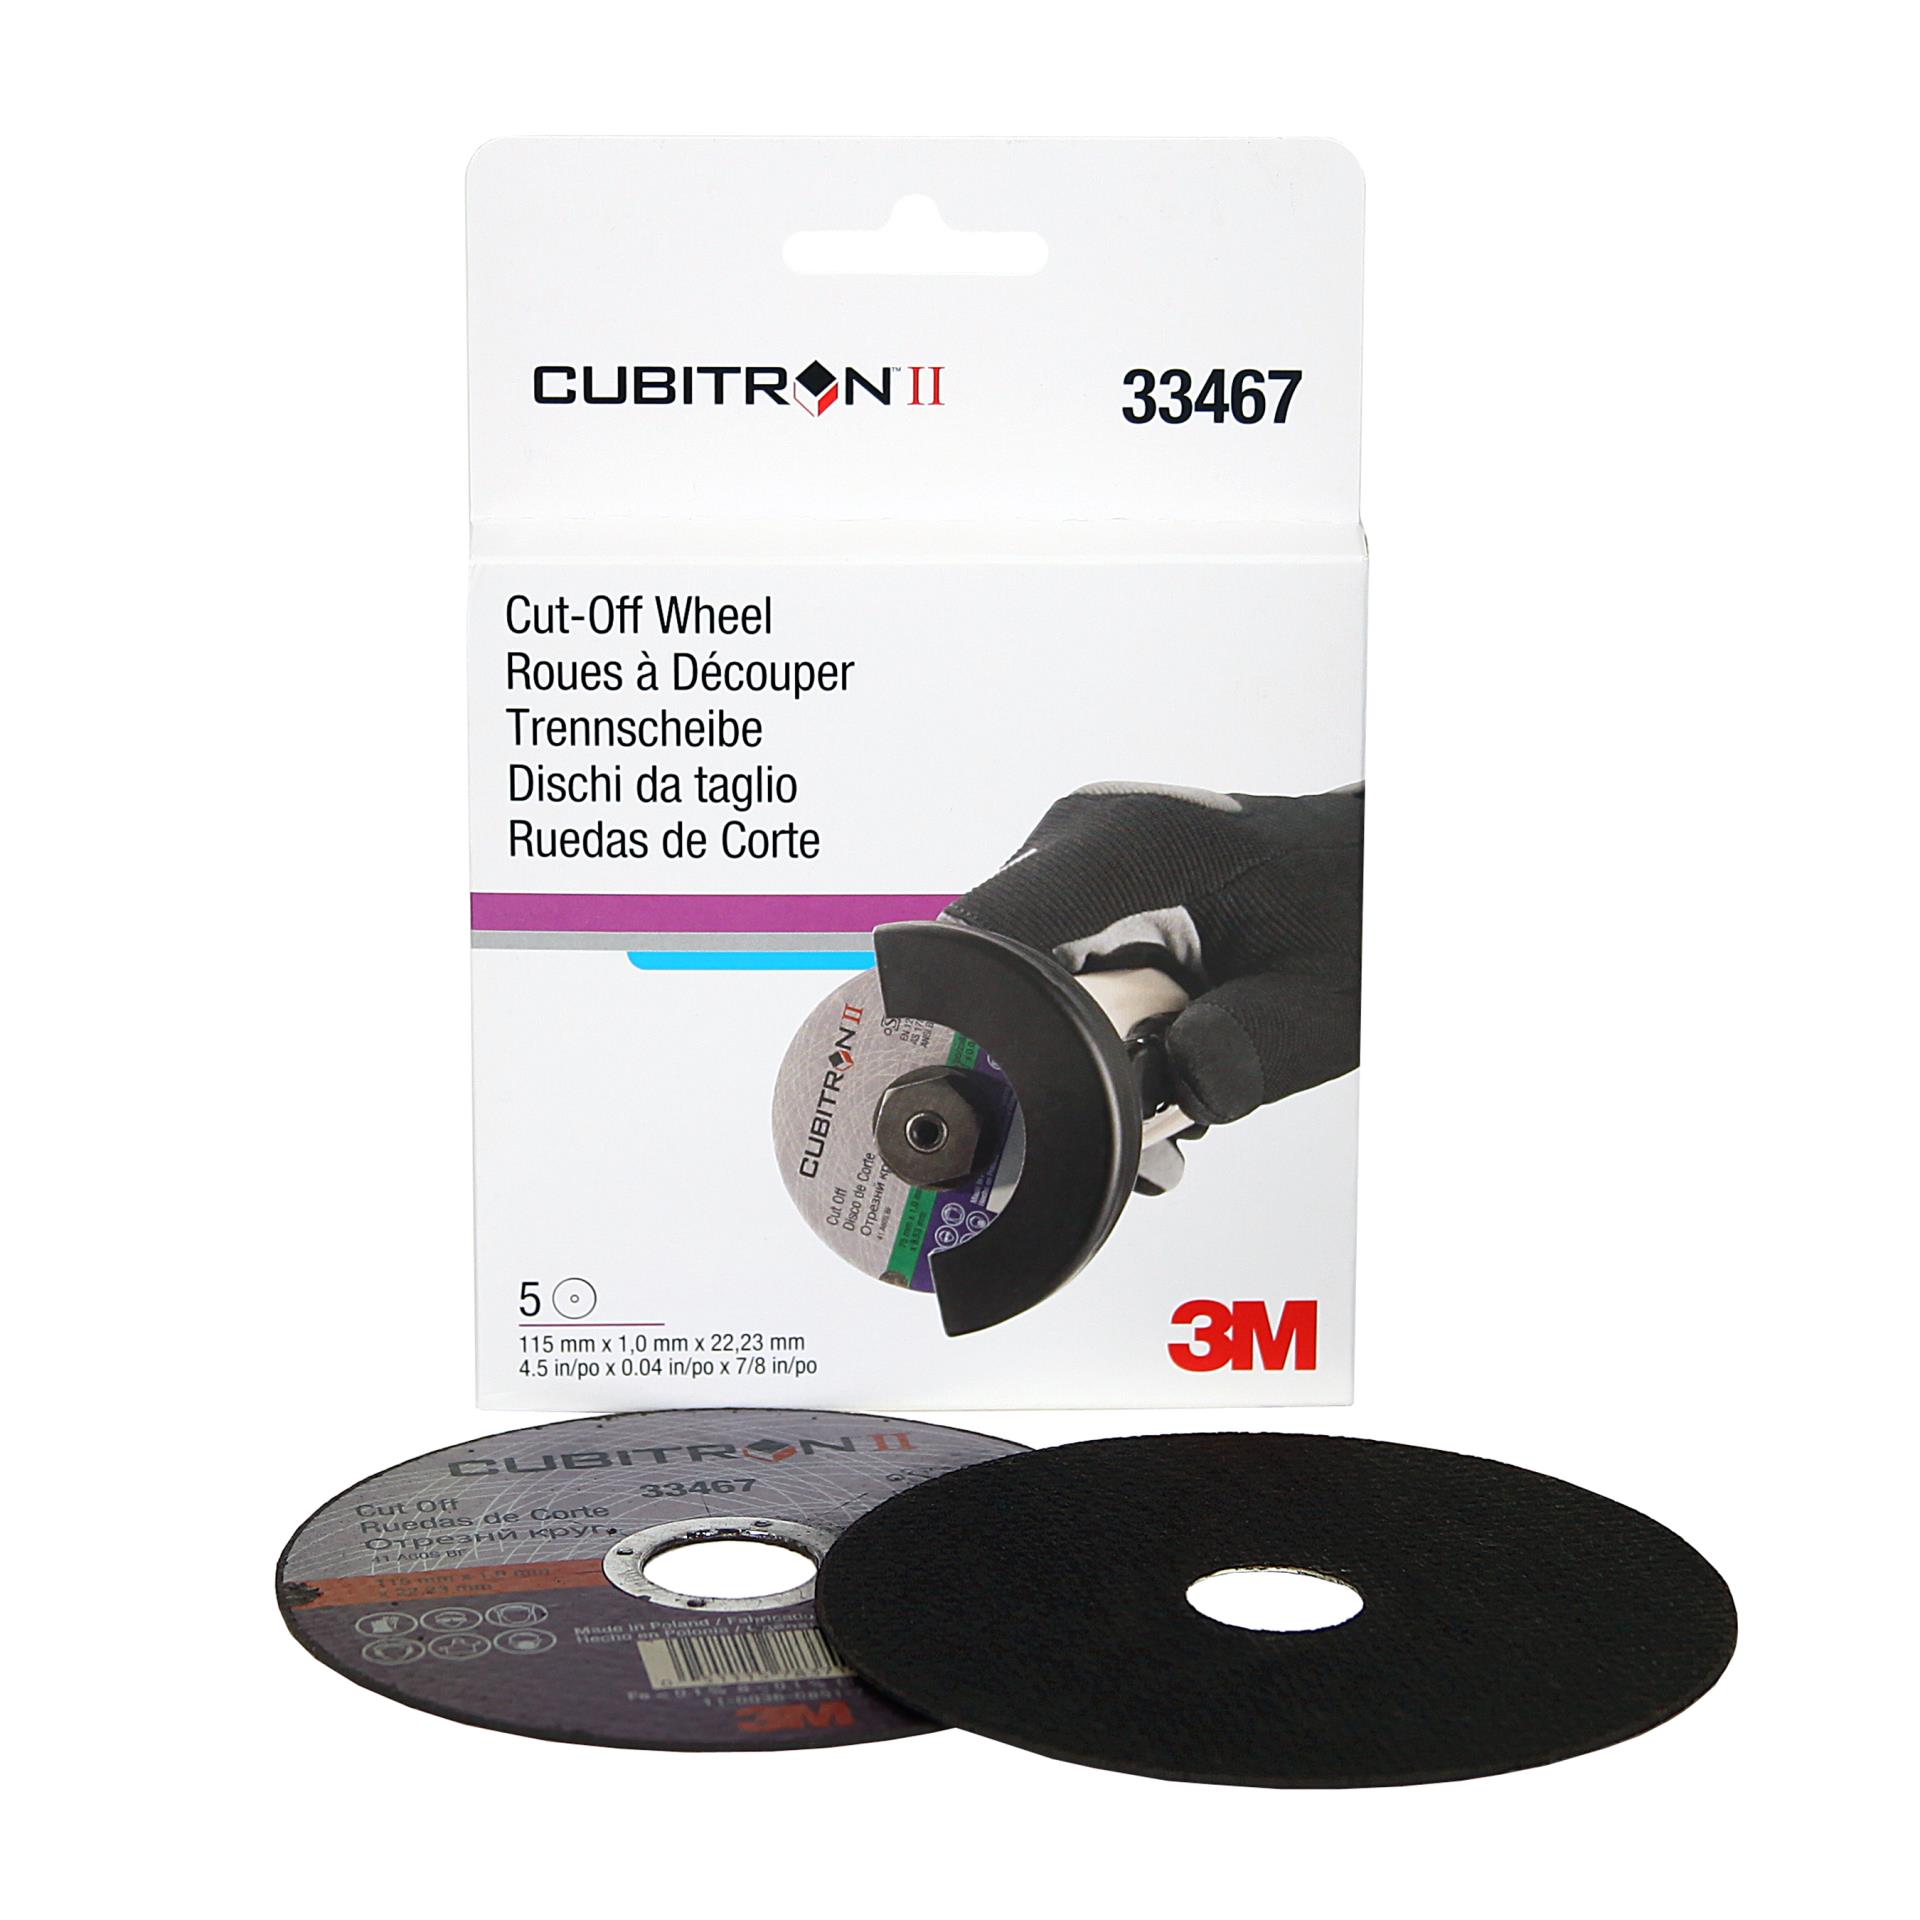 17.5 mm FL f/2.5, Rugged Blue Series IR-Cut M12 Lens